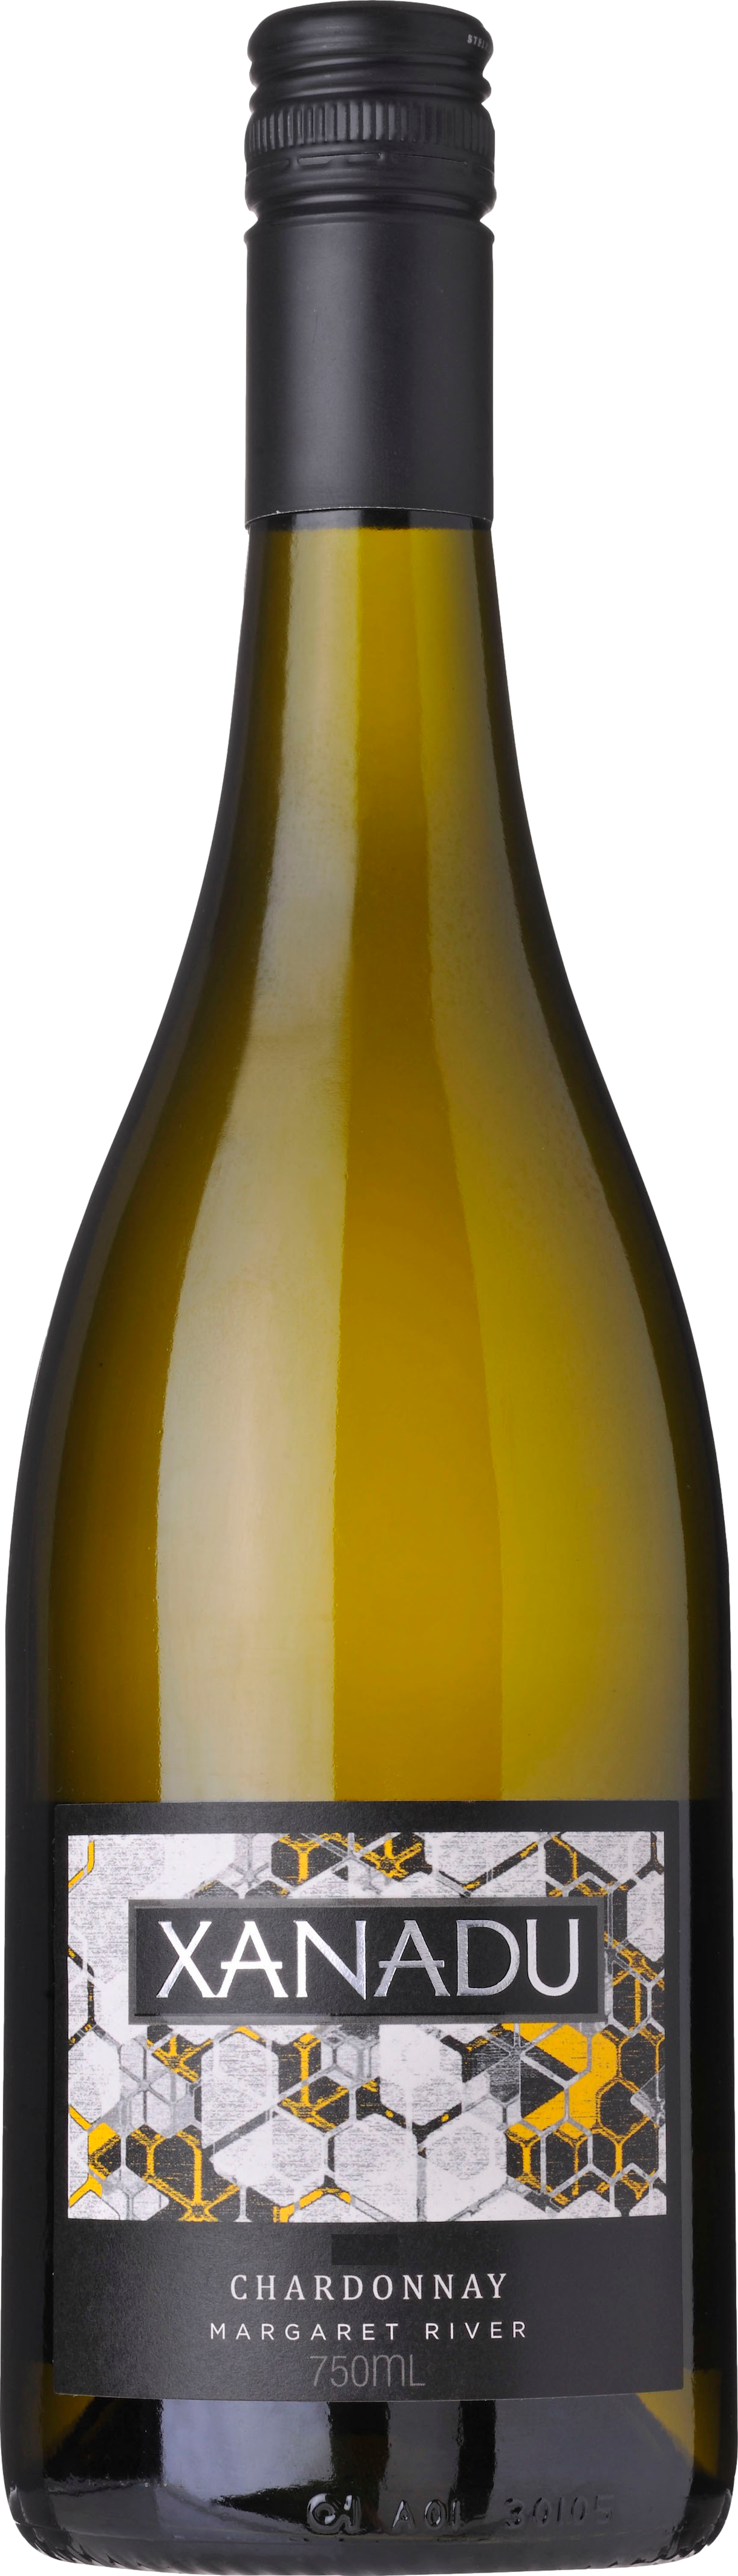 Xanadu DJL Chardonnay 2020 Bílé 13.0% 0.75 l